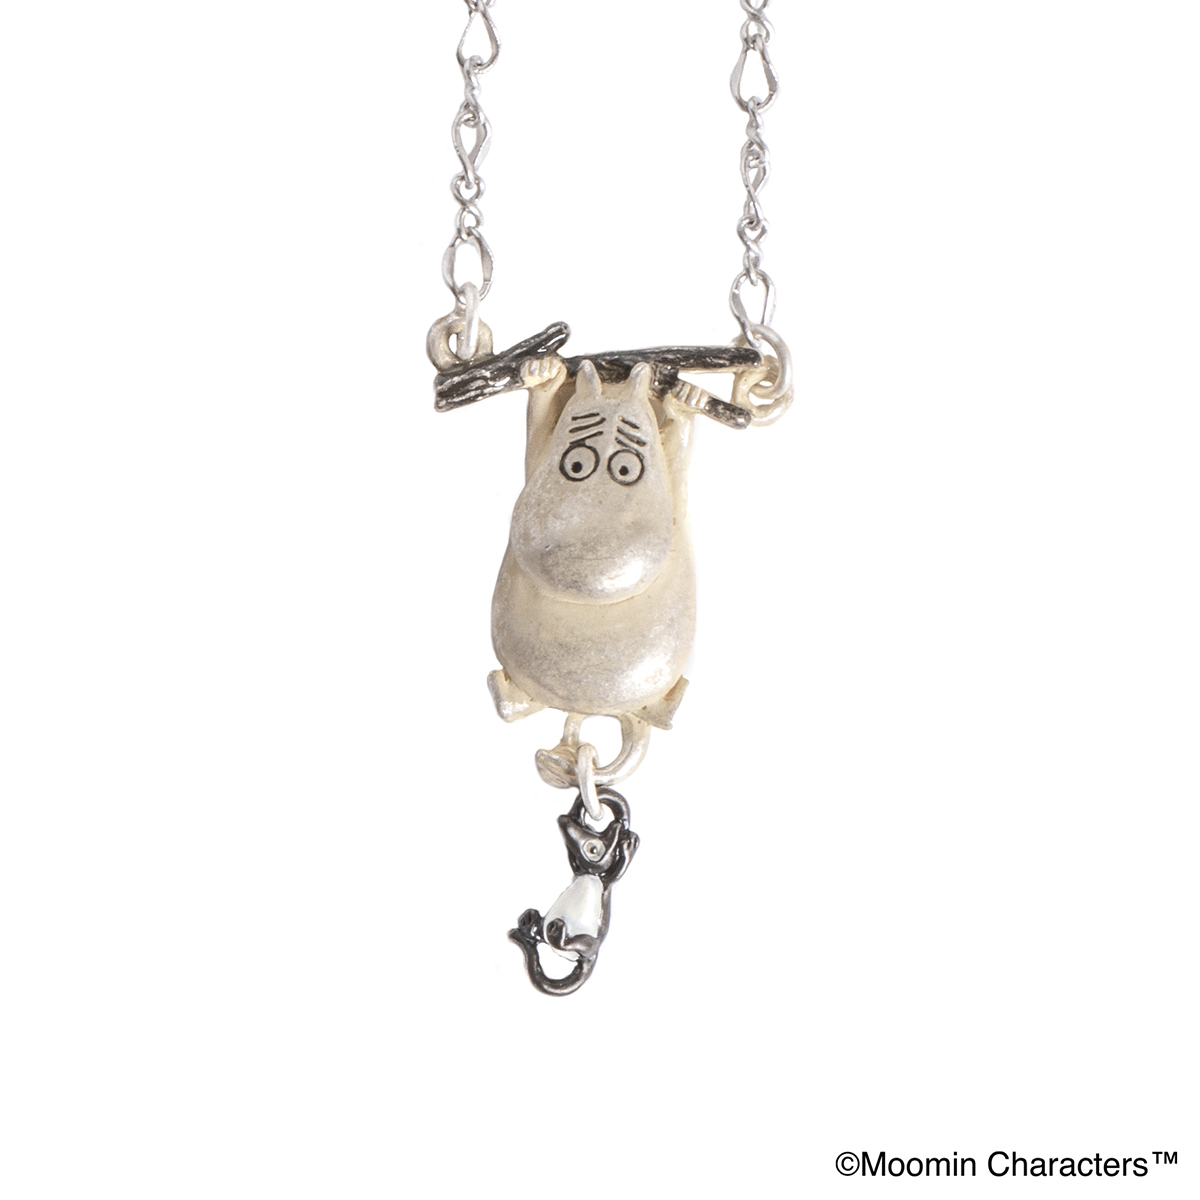 ムーミンとソフスのゆらゆらネックレス【ムーミンシリーズ】 / Moomin and Shadow's Swinging Necklace